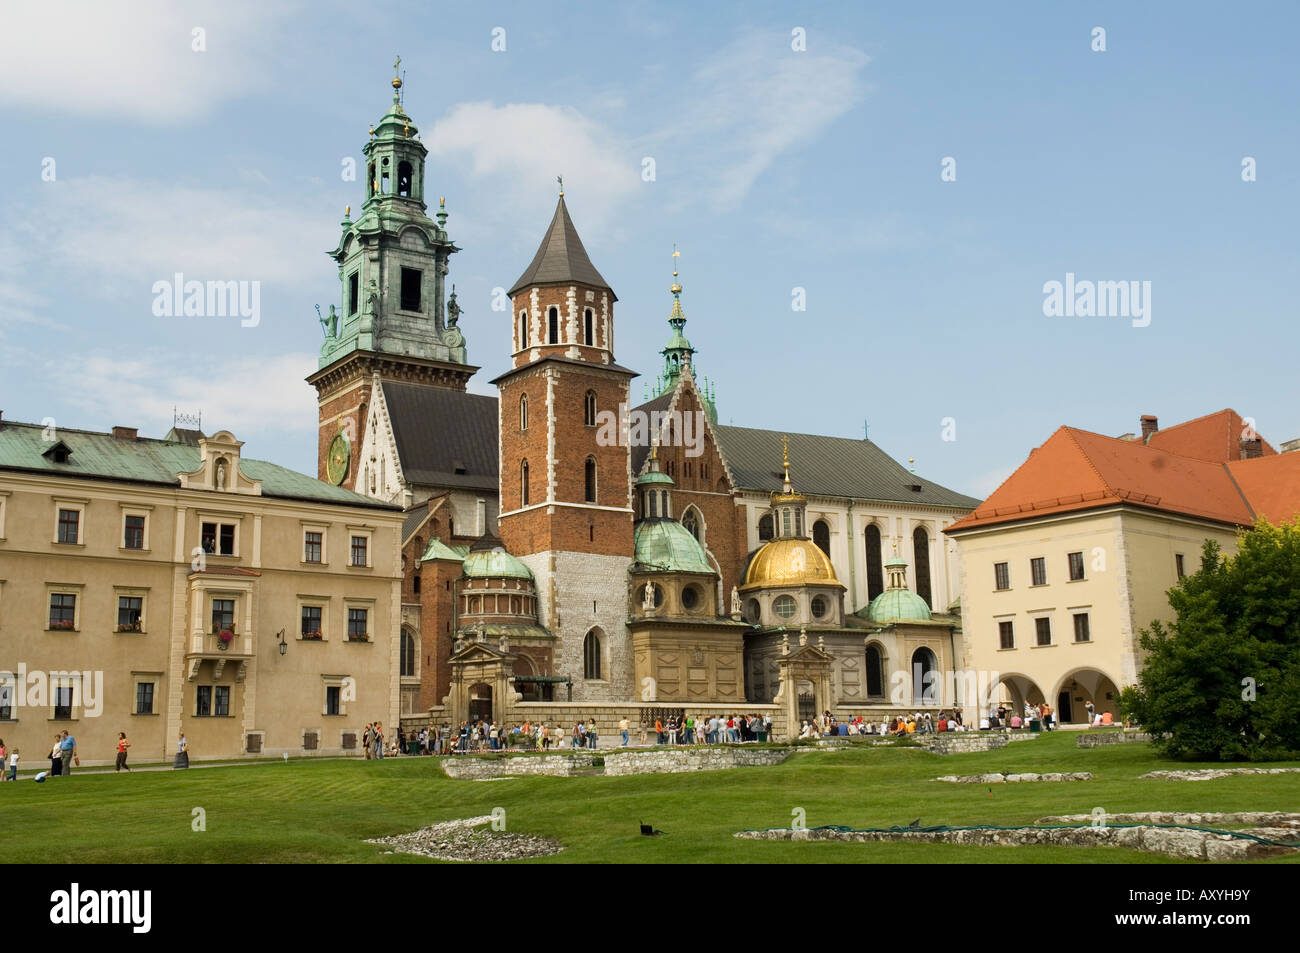 Cathédrale de Wawel Royal Castle, salon, Cracovie (Cracovie), UNESCO World Heritage Site, Pologne, Europe Banque D'Images